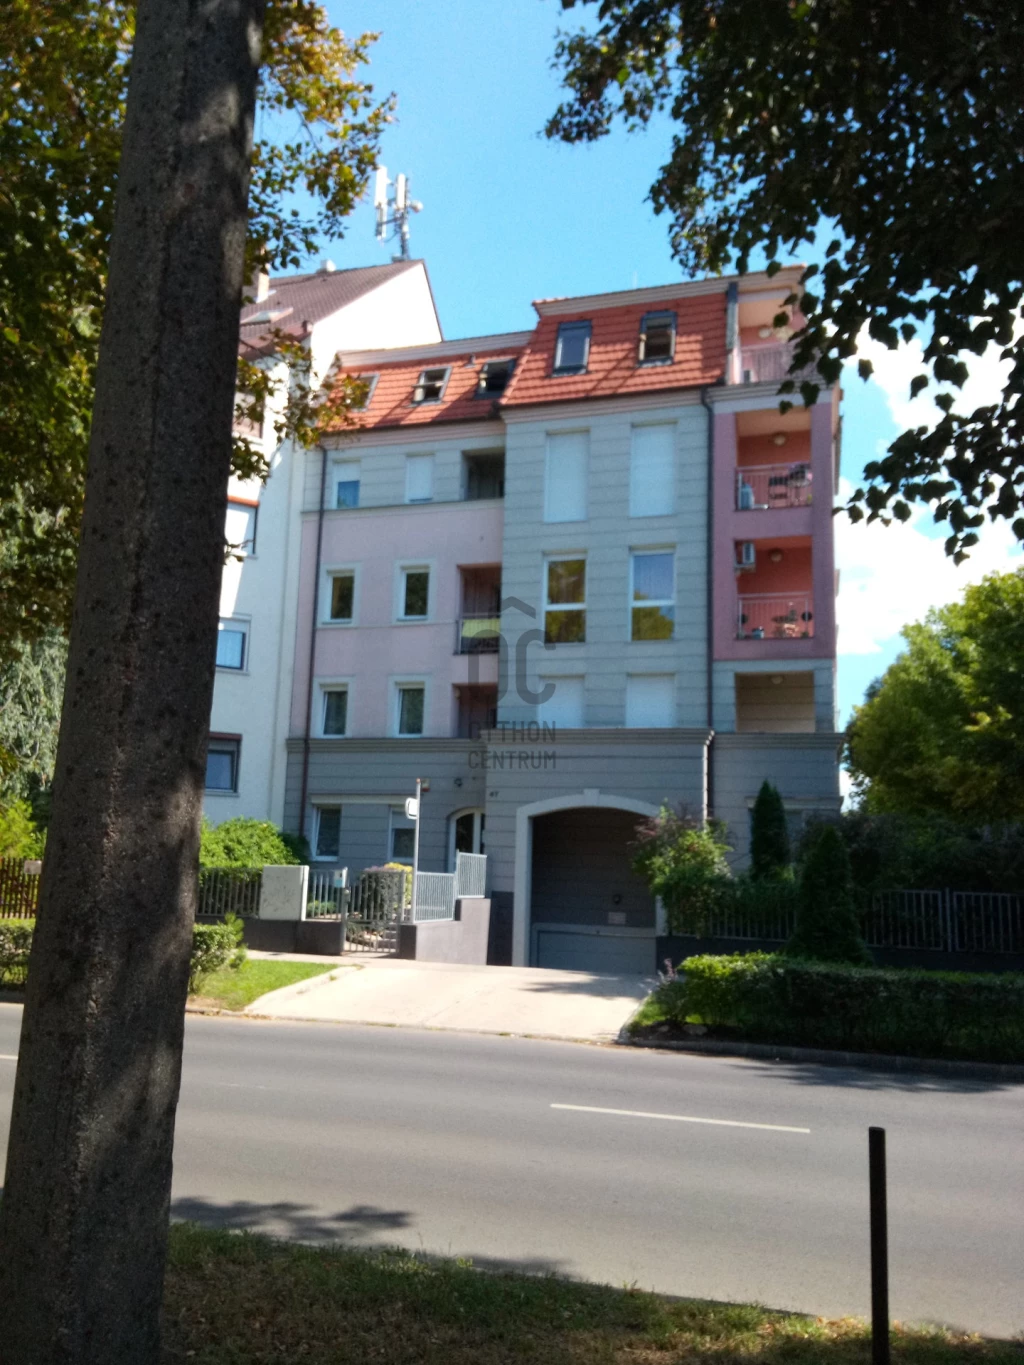 For sale brick flat, Debrecen, Nagyerdő